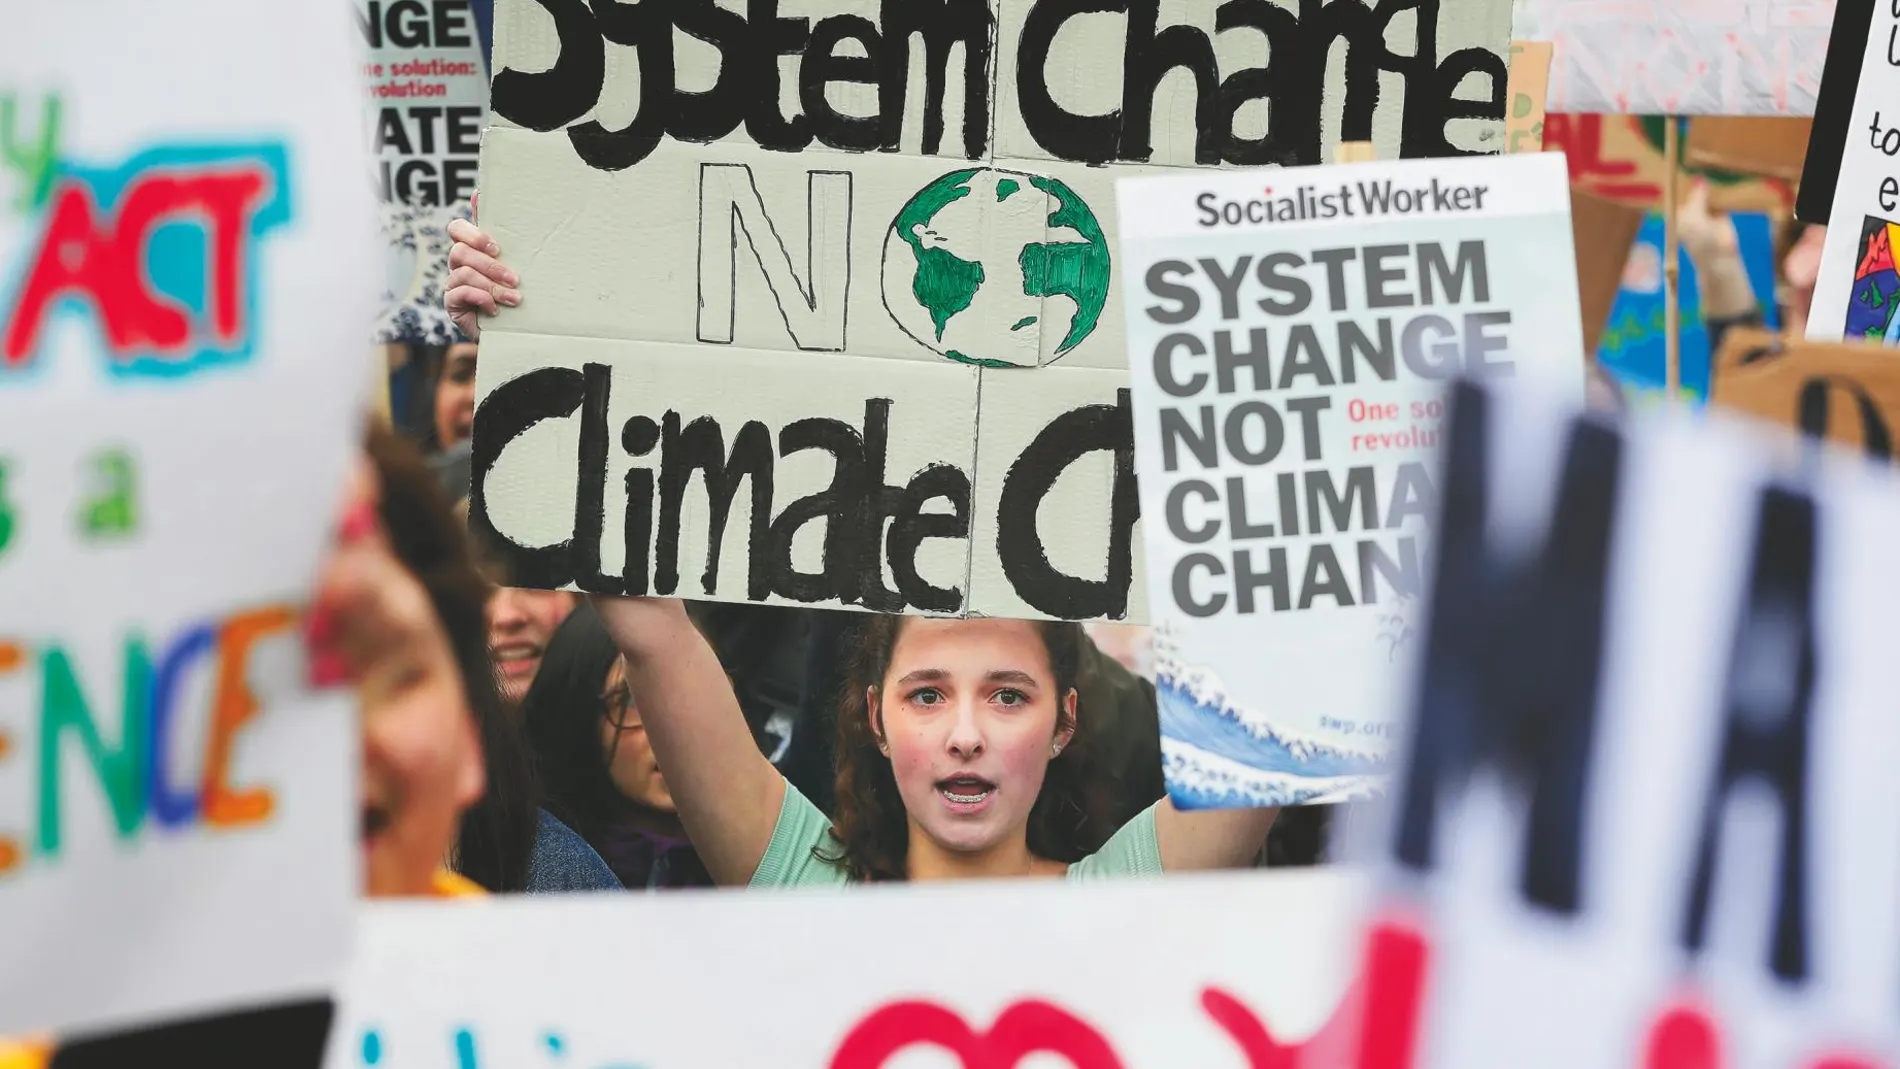 En agosto de 2018 arrancó el movimiento “Fridays for future” para protestar contra la inacción frente a la crisis climática